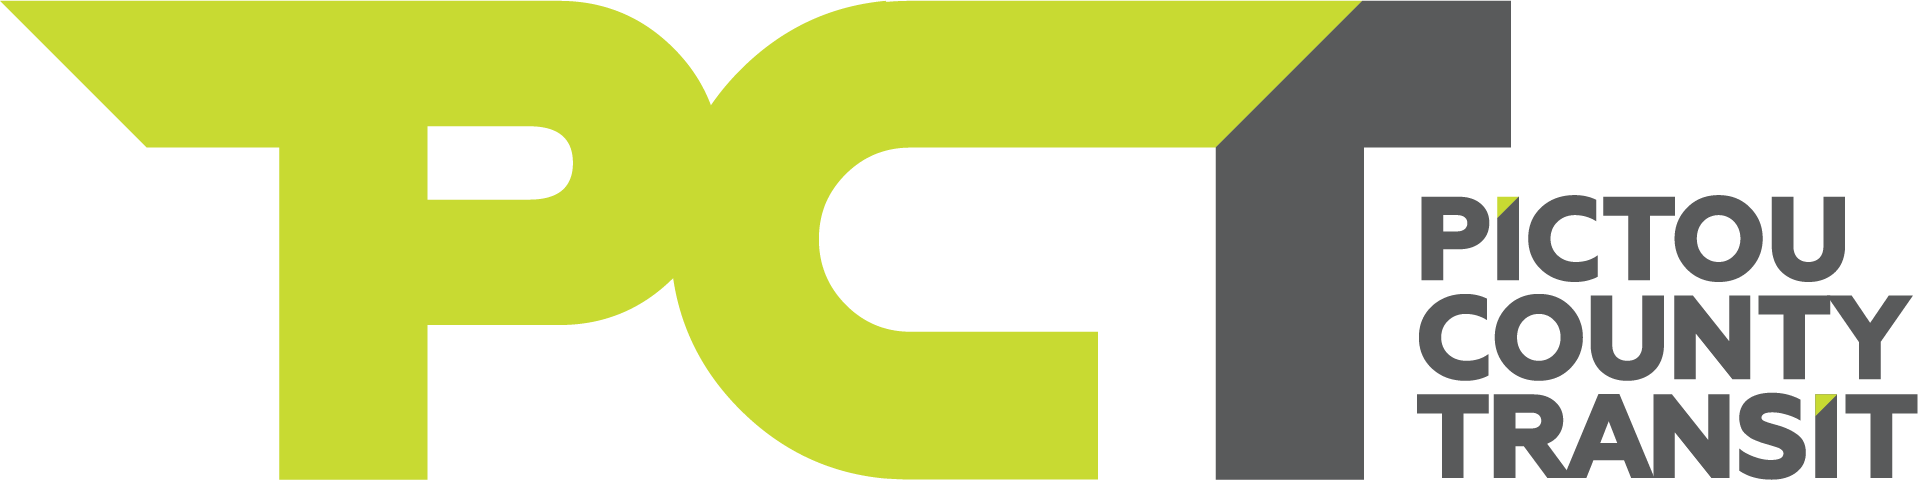 PCT logo 01 (002)